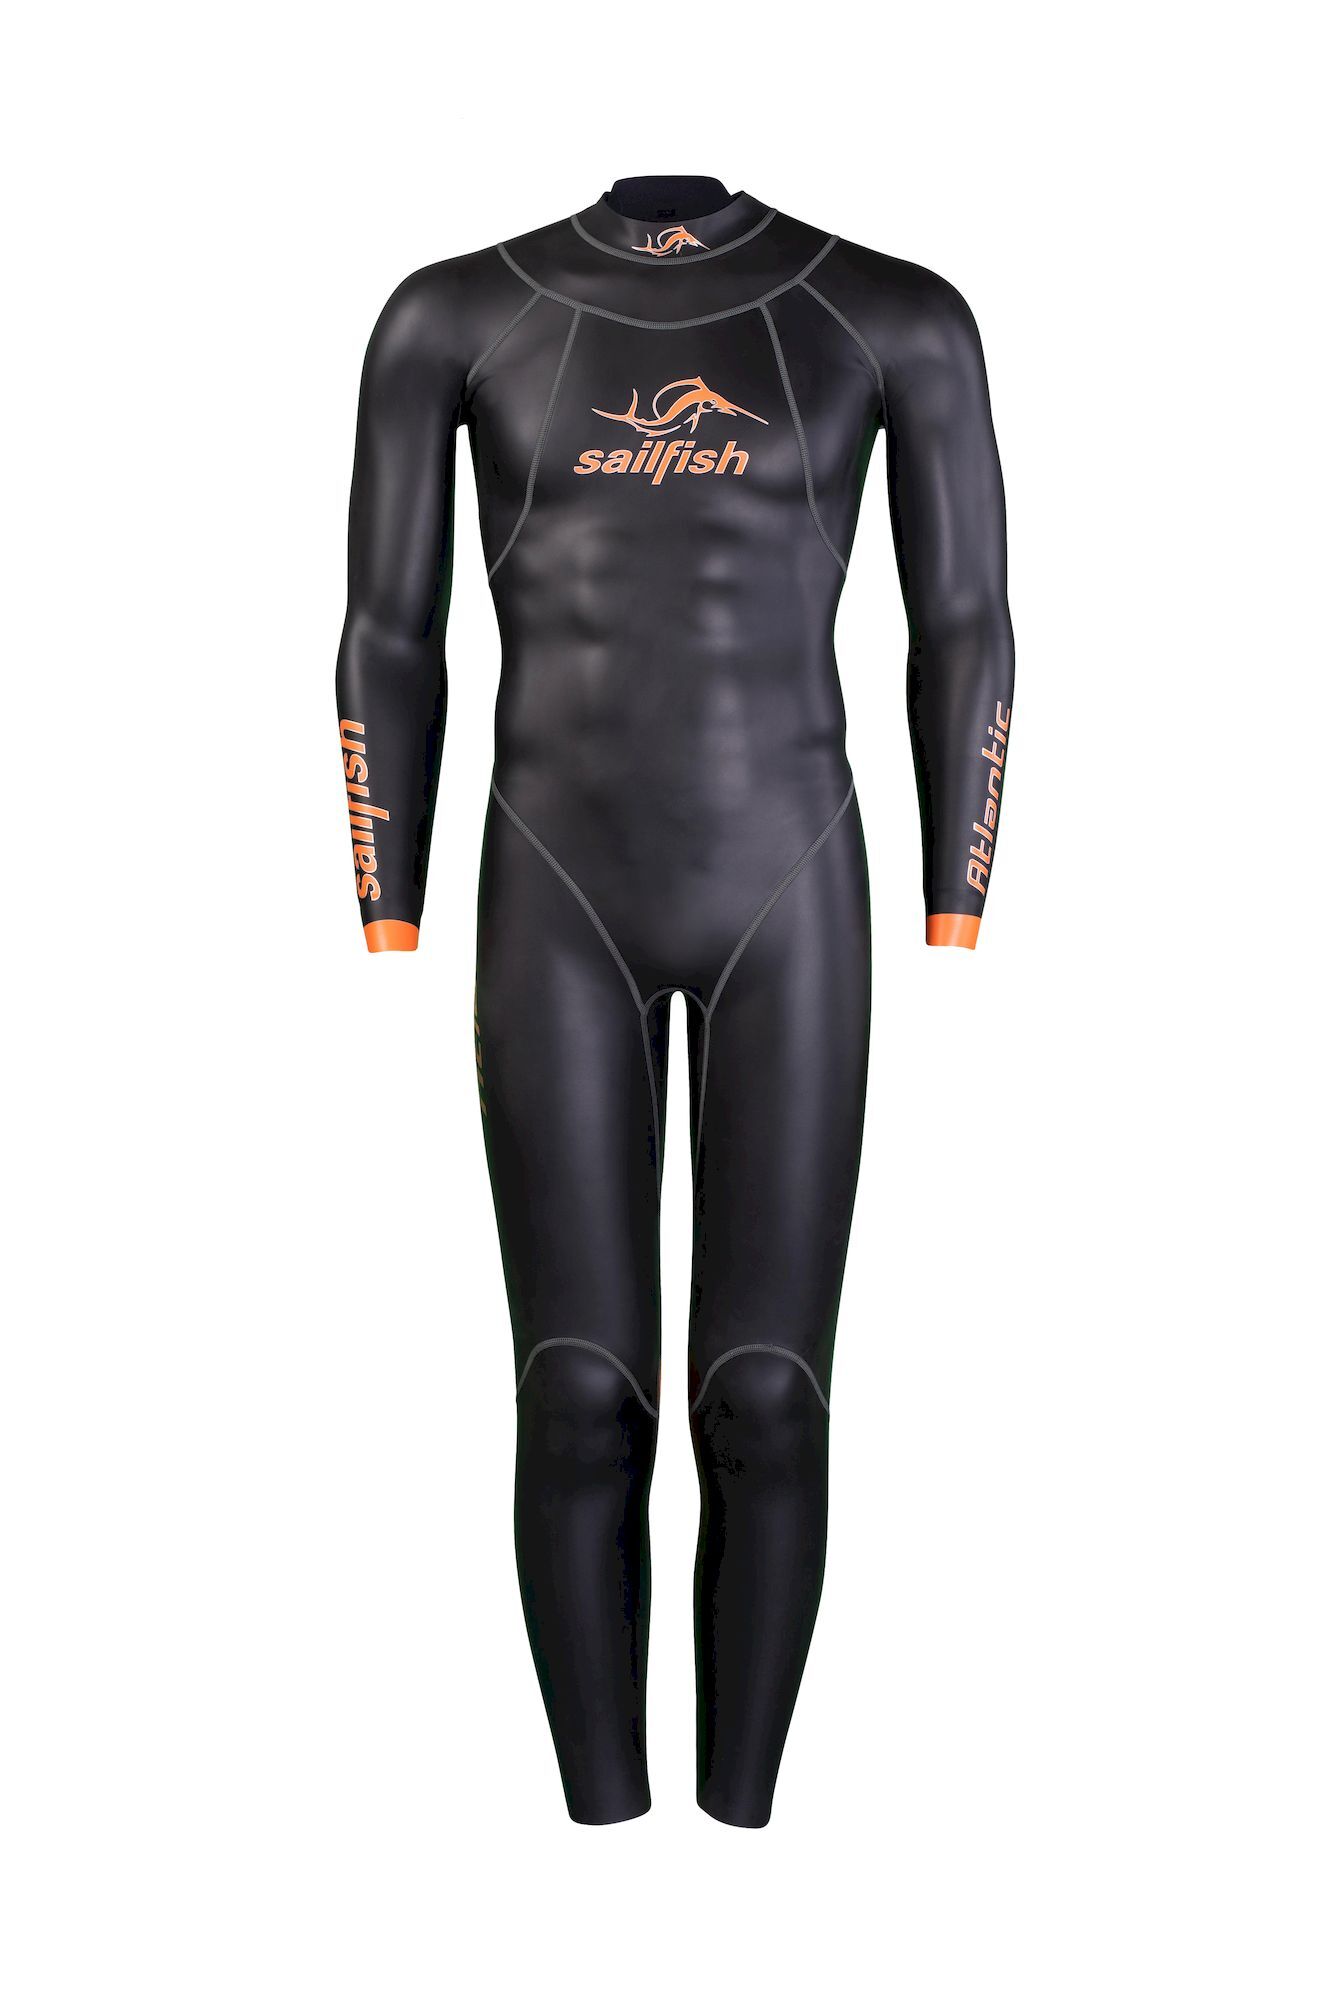 Sailfish Mens Atlantic 2 - Neoprene wetsuit - Men's